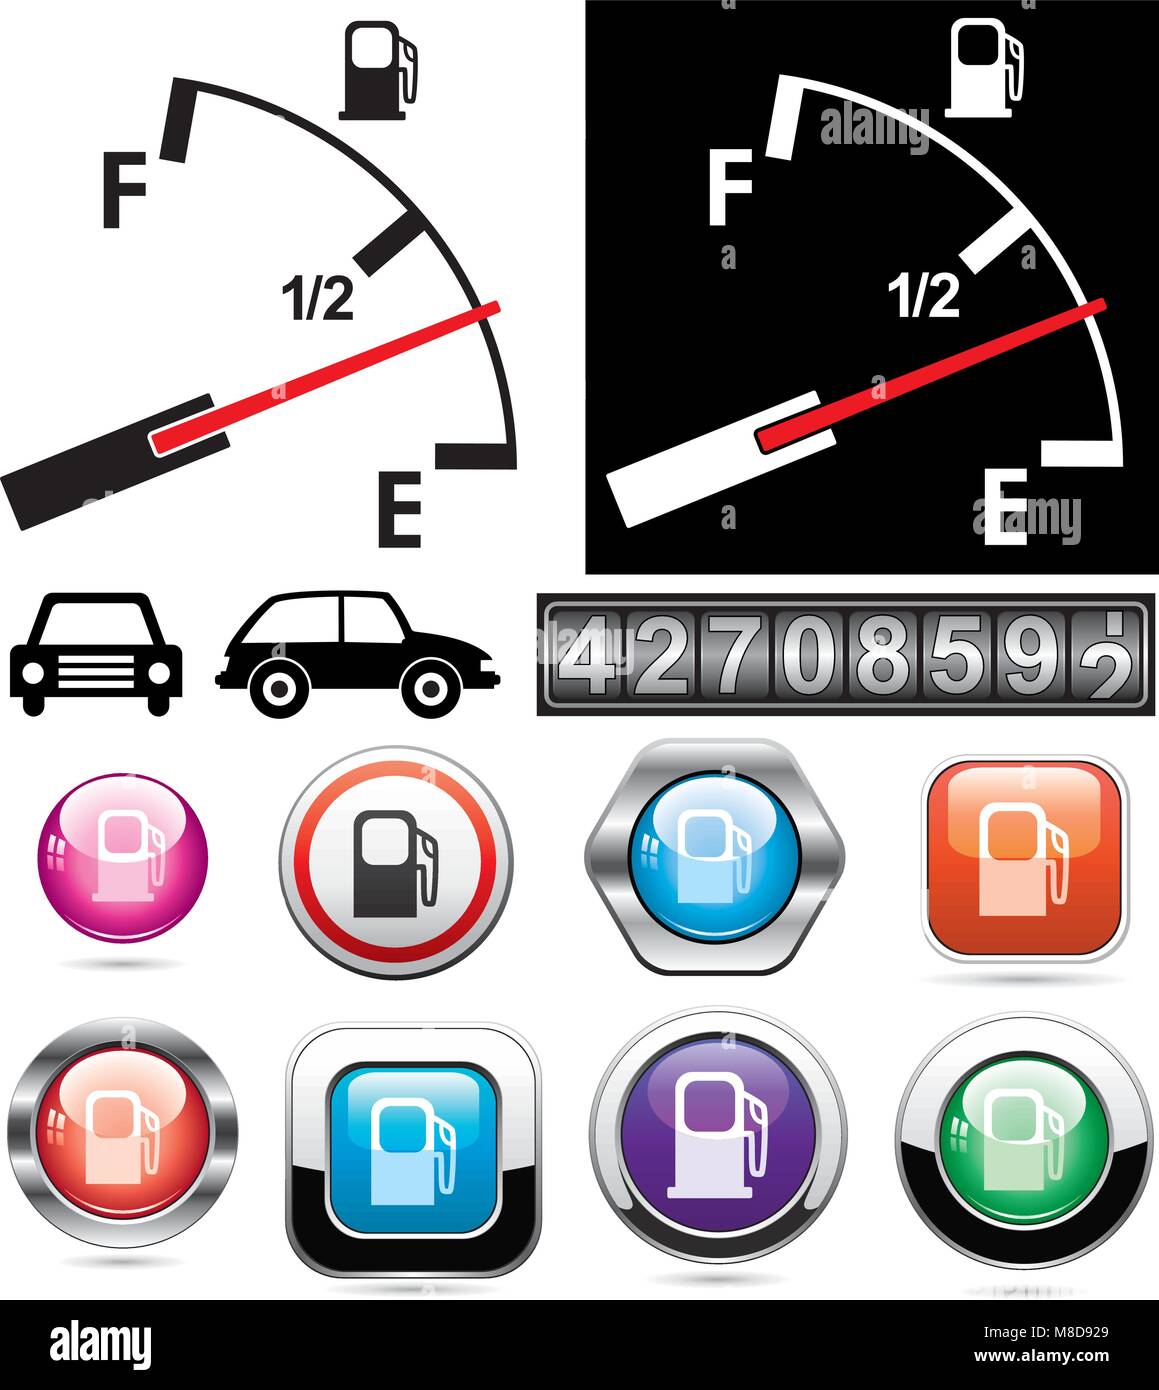 Illustrazione vettoriale del misuratore di gas e le icone di stazione di benzina Illustrazione Vettoriale